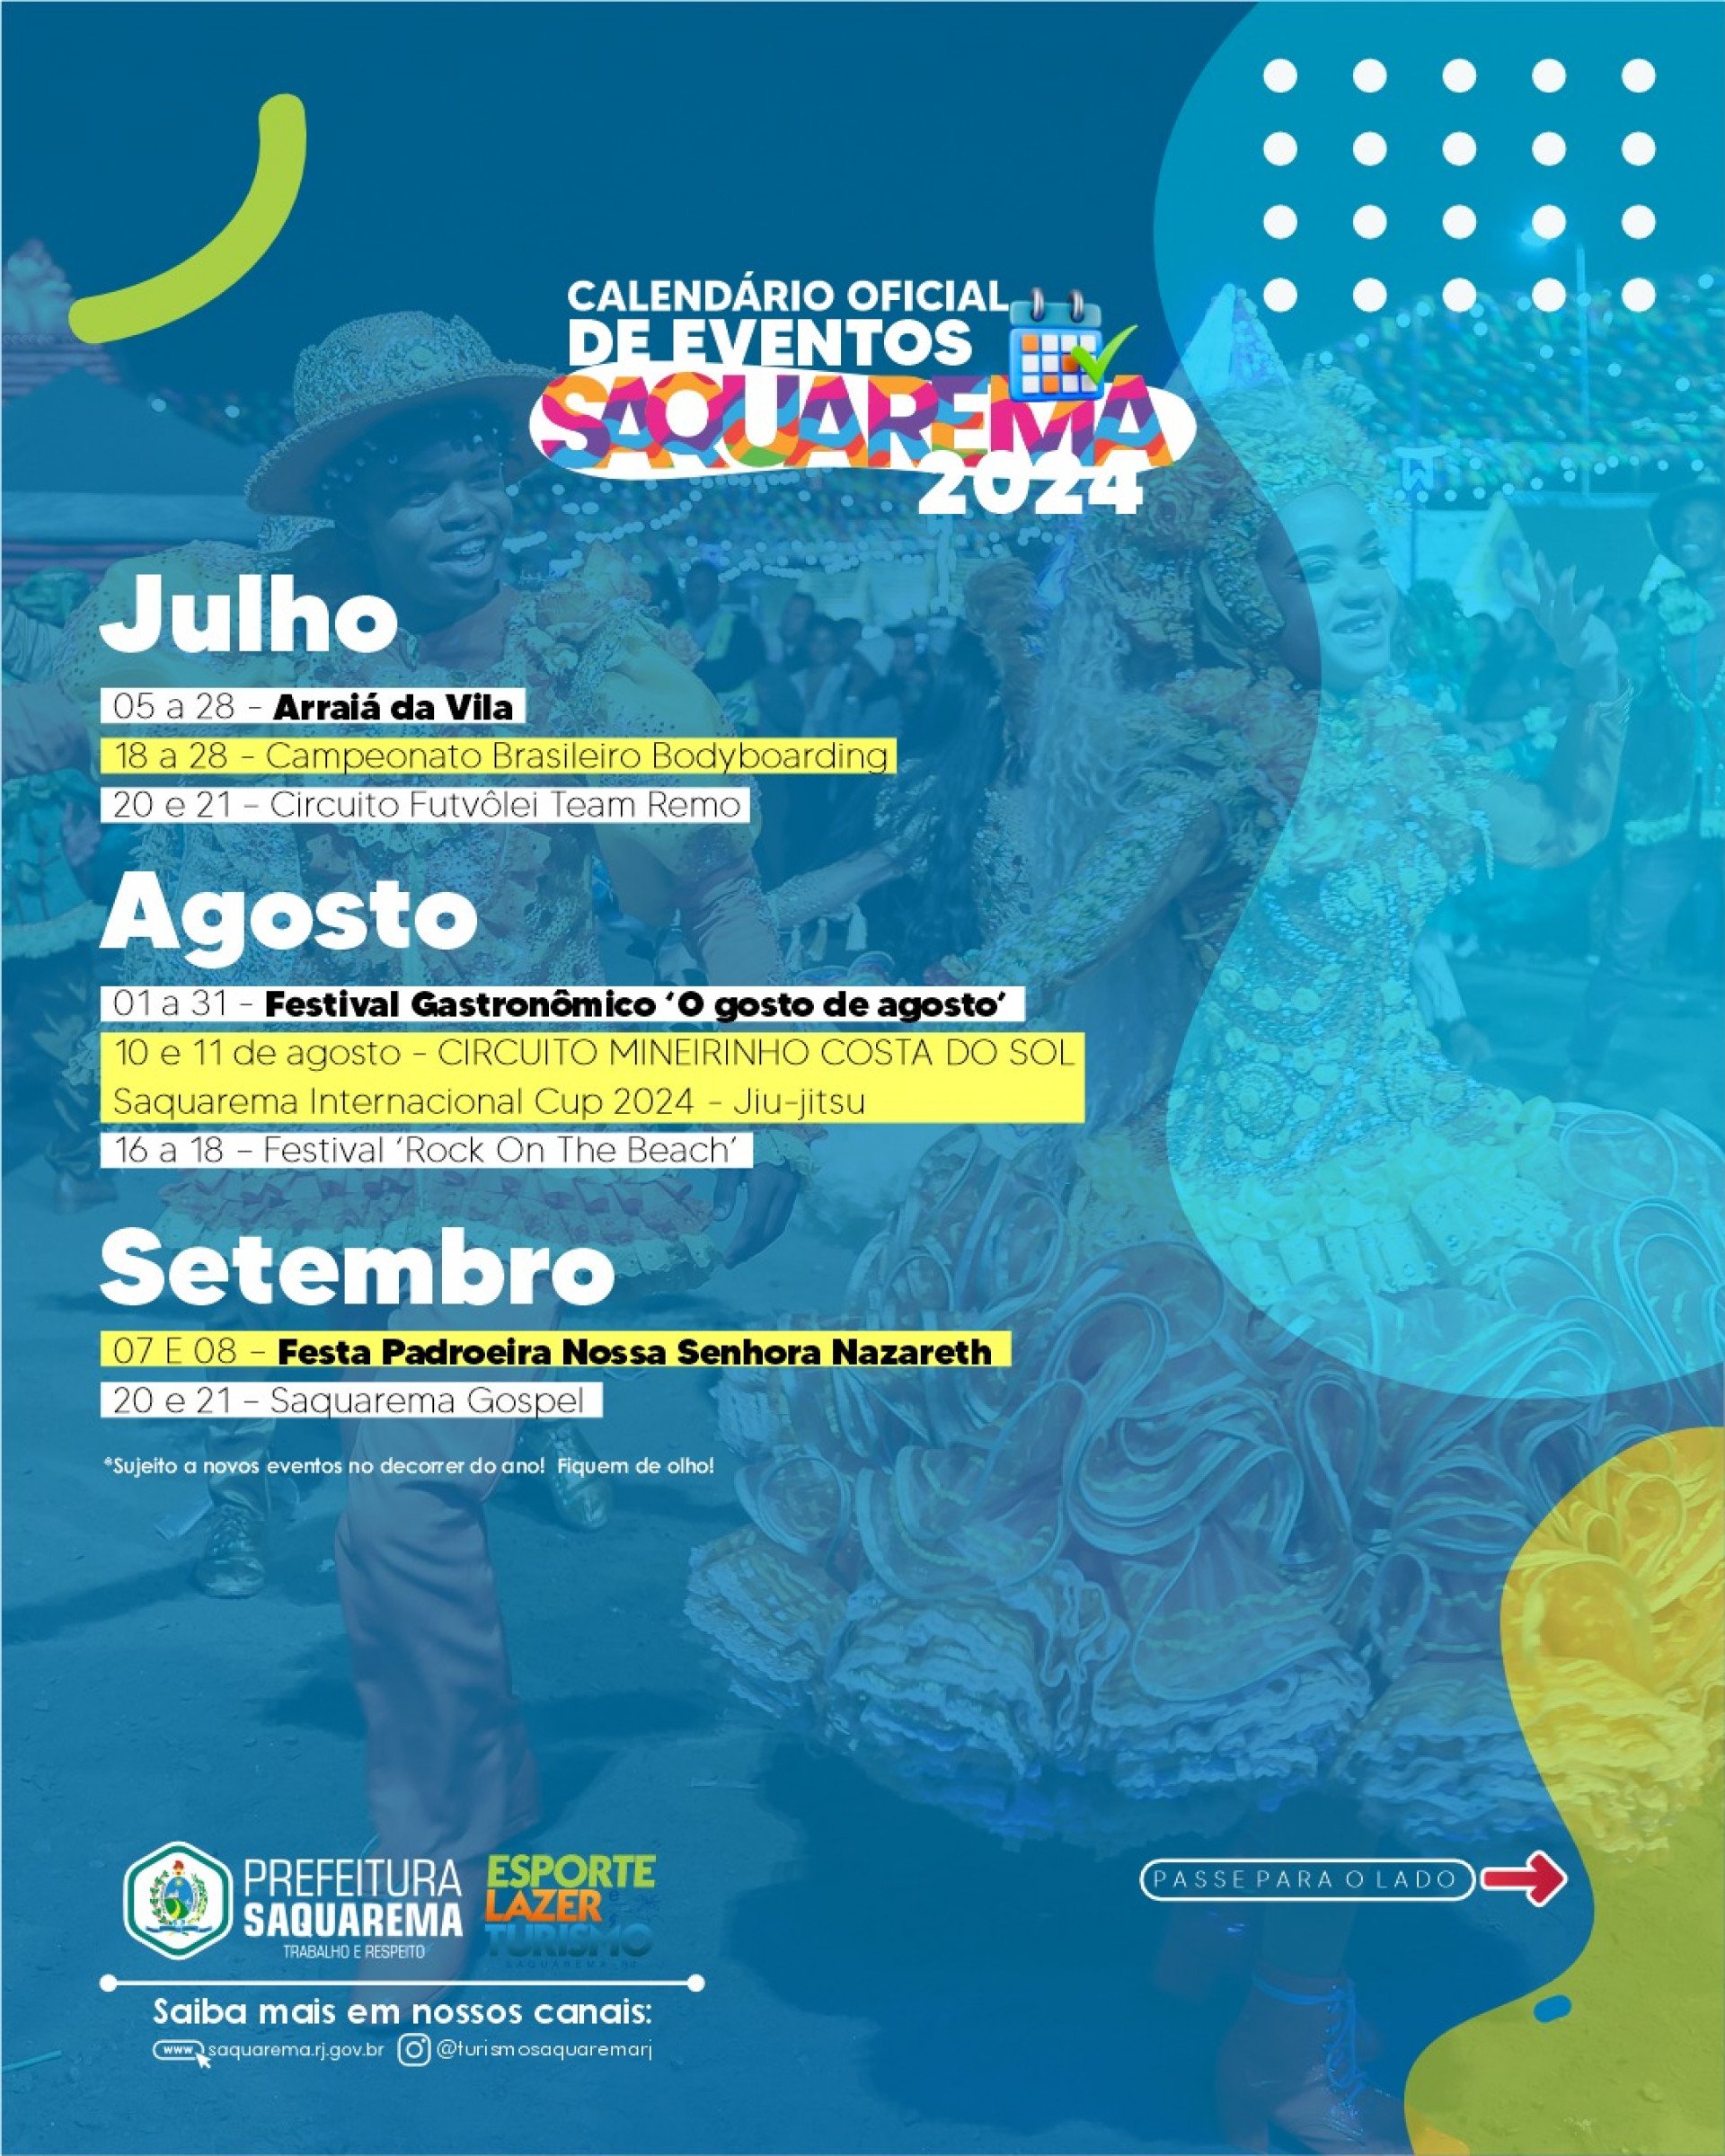 Prefeitura de Saquarema divulga calendário oficial de eventos para 2024